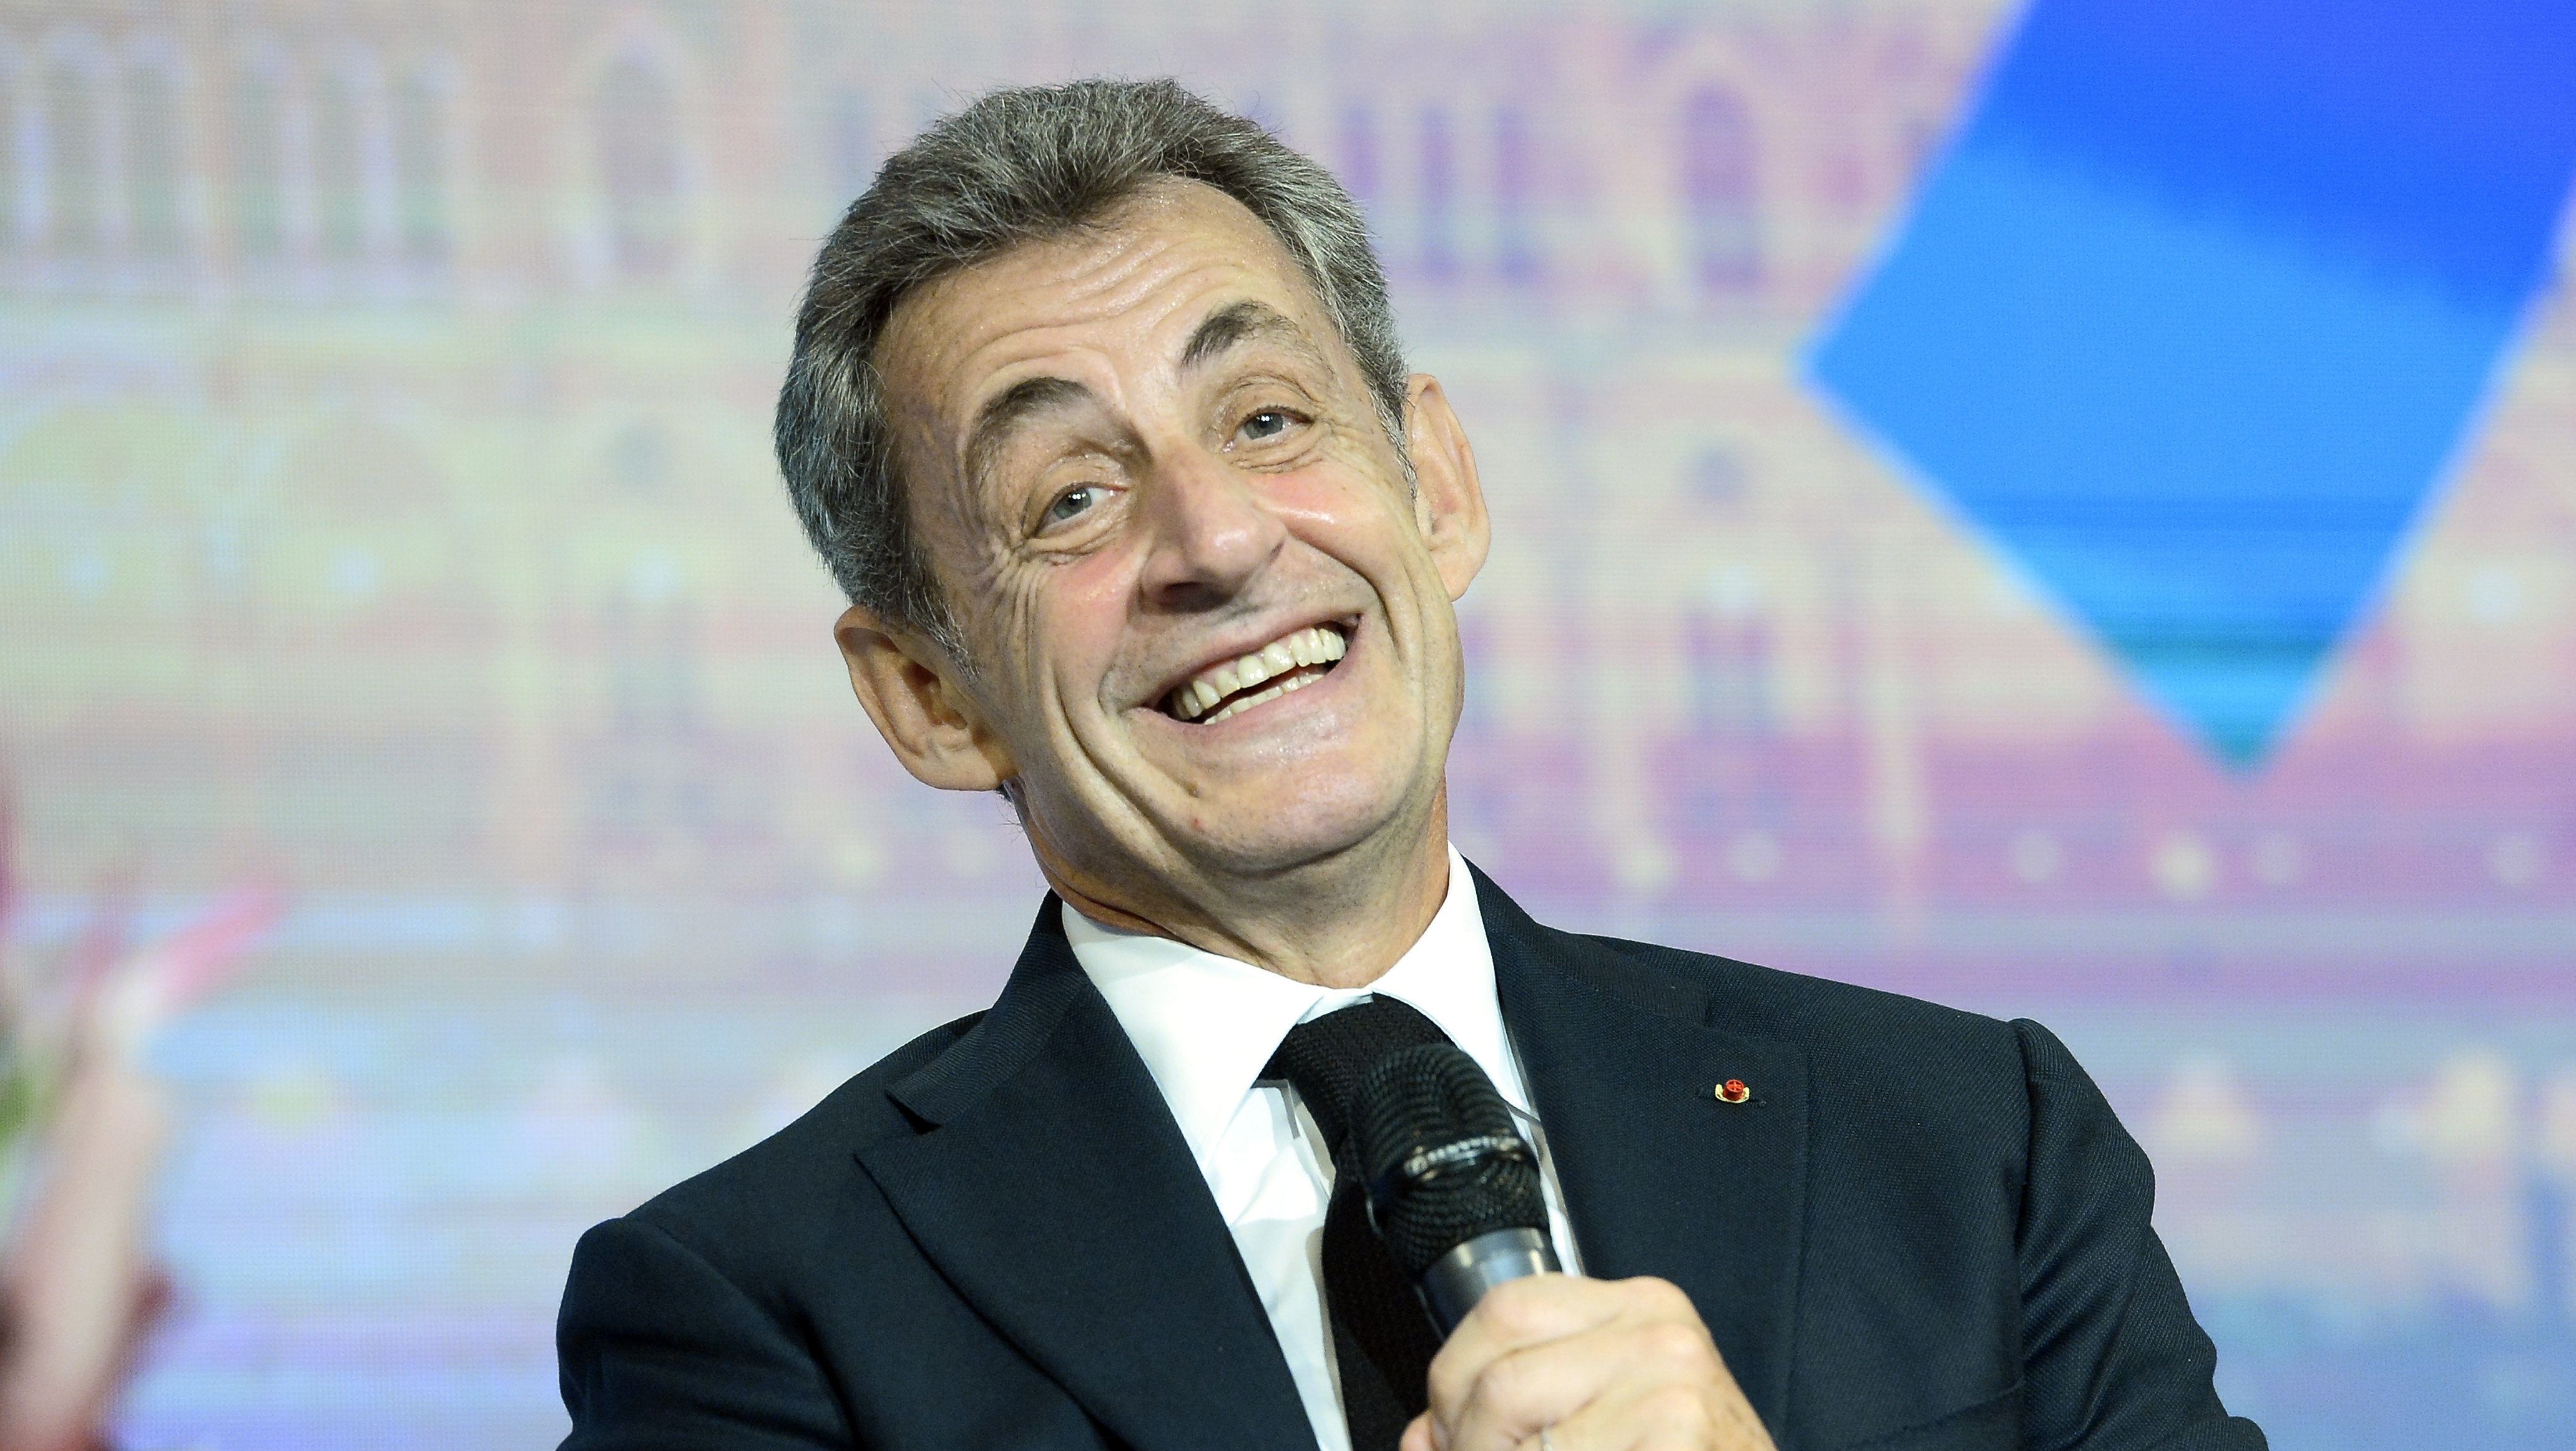 Sarkozynek bíróság elé kell állnia törvénytelen kampányfinanszírozás miatt